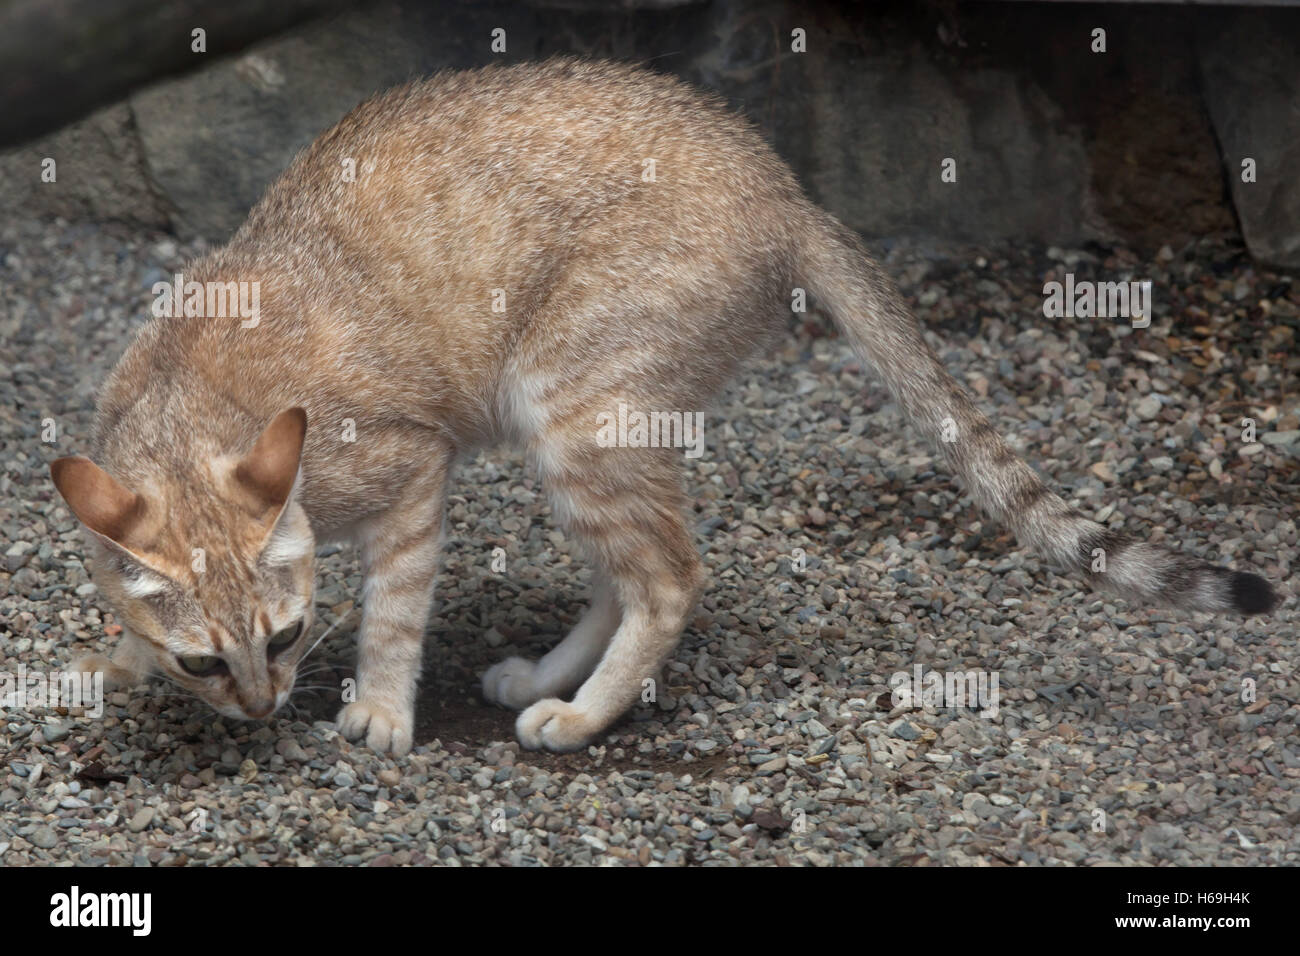 Arabian wildcat (Felis silvestris gordoni), also known as the Gordon's wildcat. Wildlife animal. Stock Photo